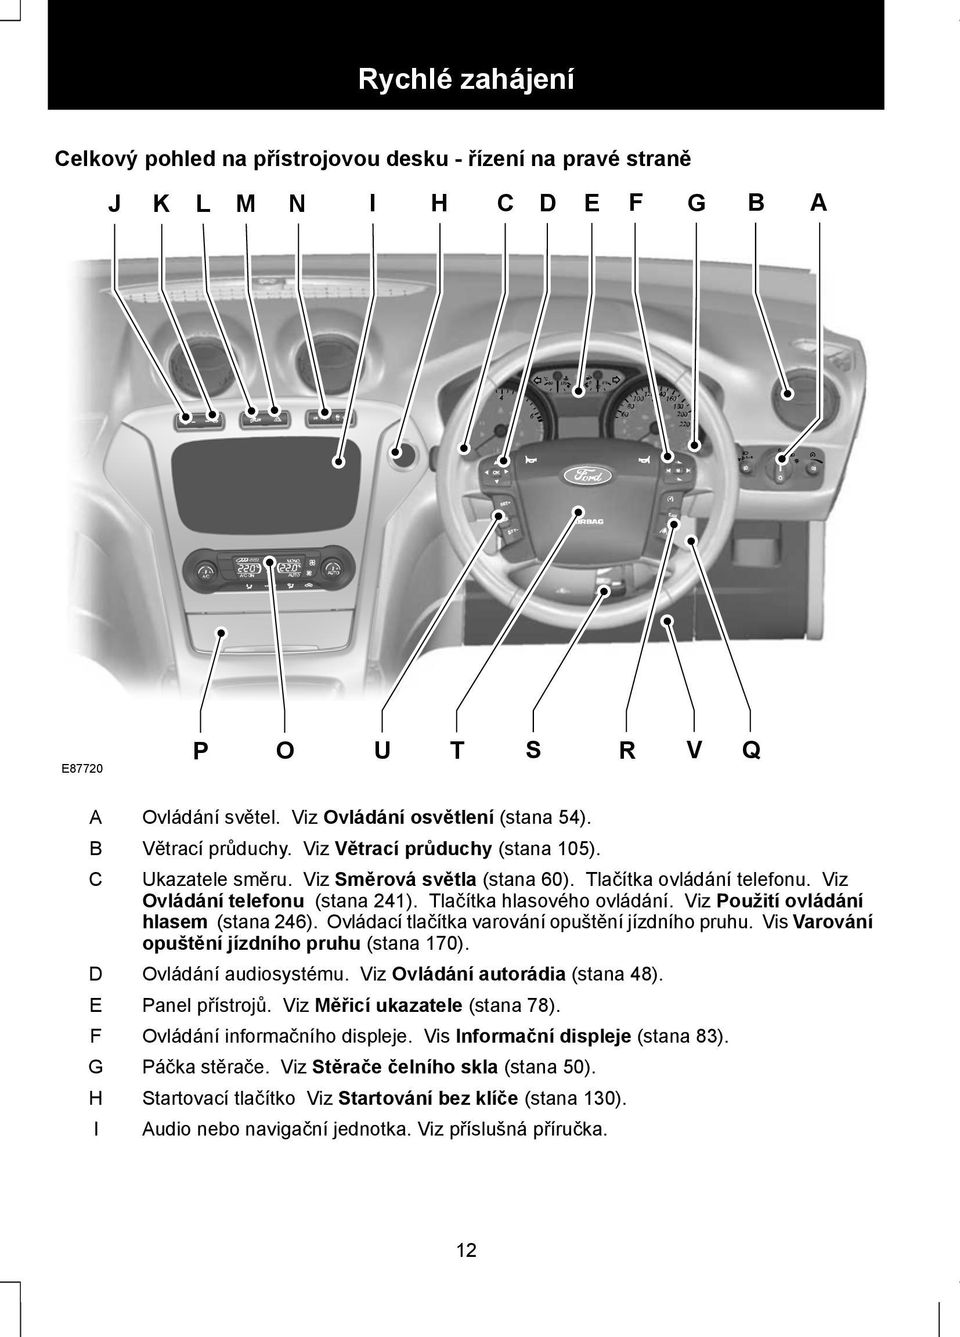 Viz Použití ovládání hlasem (stana 246). Ovládací tlačítka varování opuštění jízdního pruhu. Vis Varování opuštění jízdního pruhu (stana 170). Ovládání audiosystému. Viz Ovládání autorádia (stana 48).